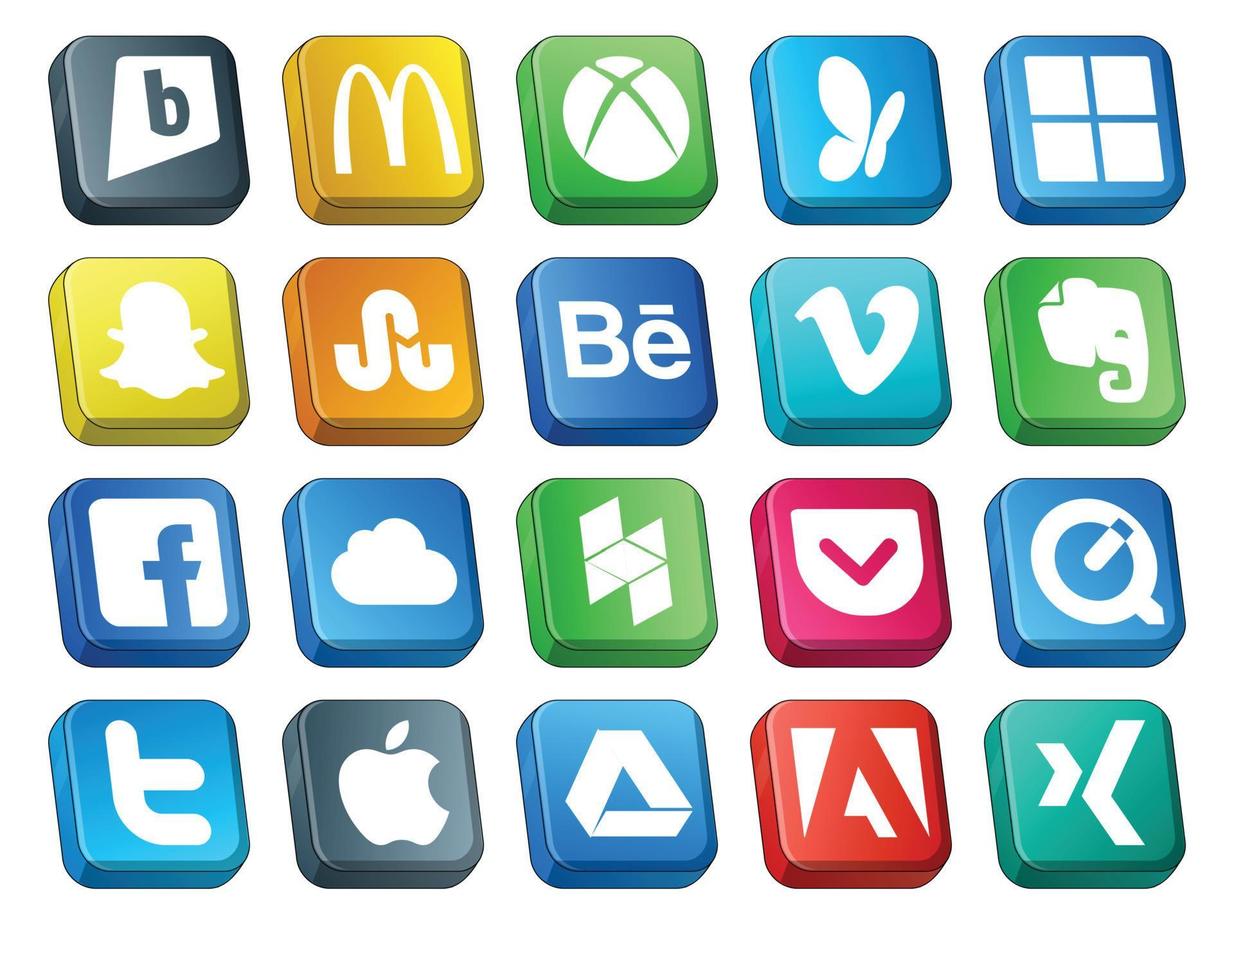 Paquete de 20 íconos de redes sociales que incluye tweet quicktime vimeo pocket icloud vector